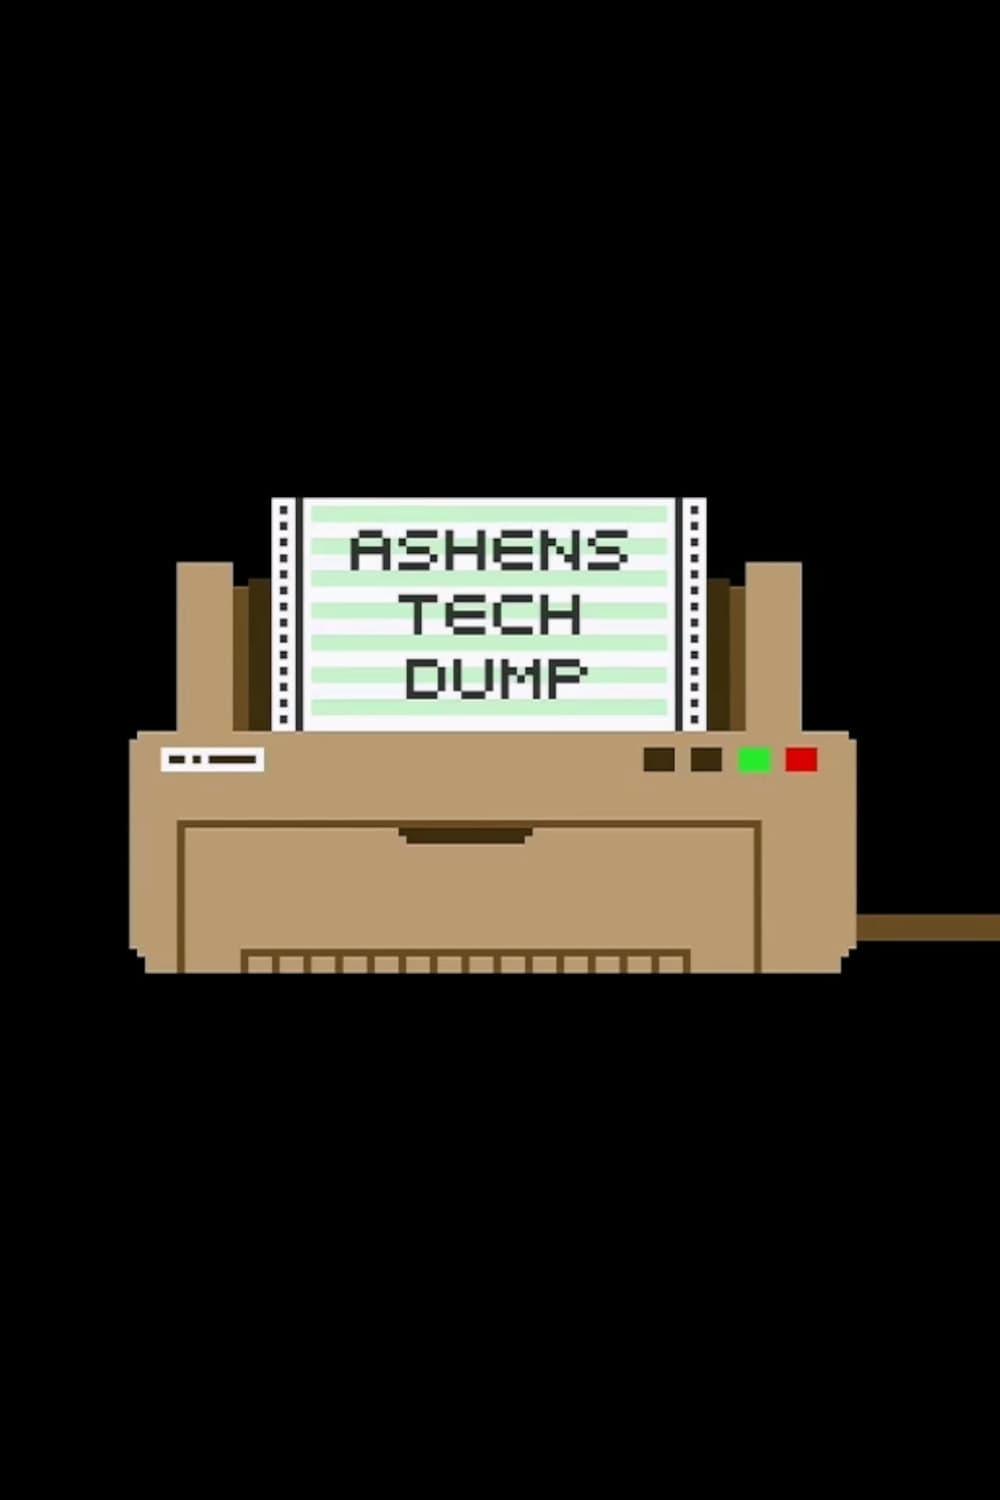 Ashen's Tech Dump poster